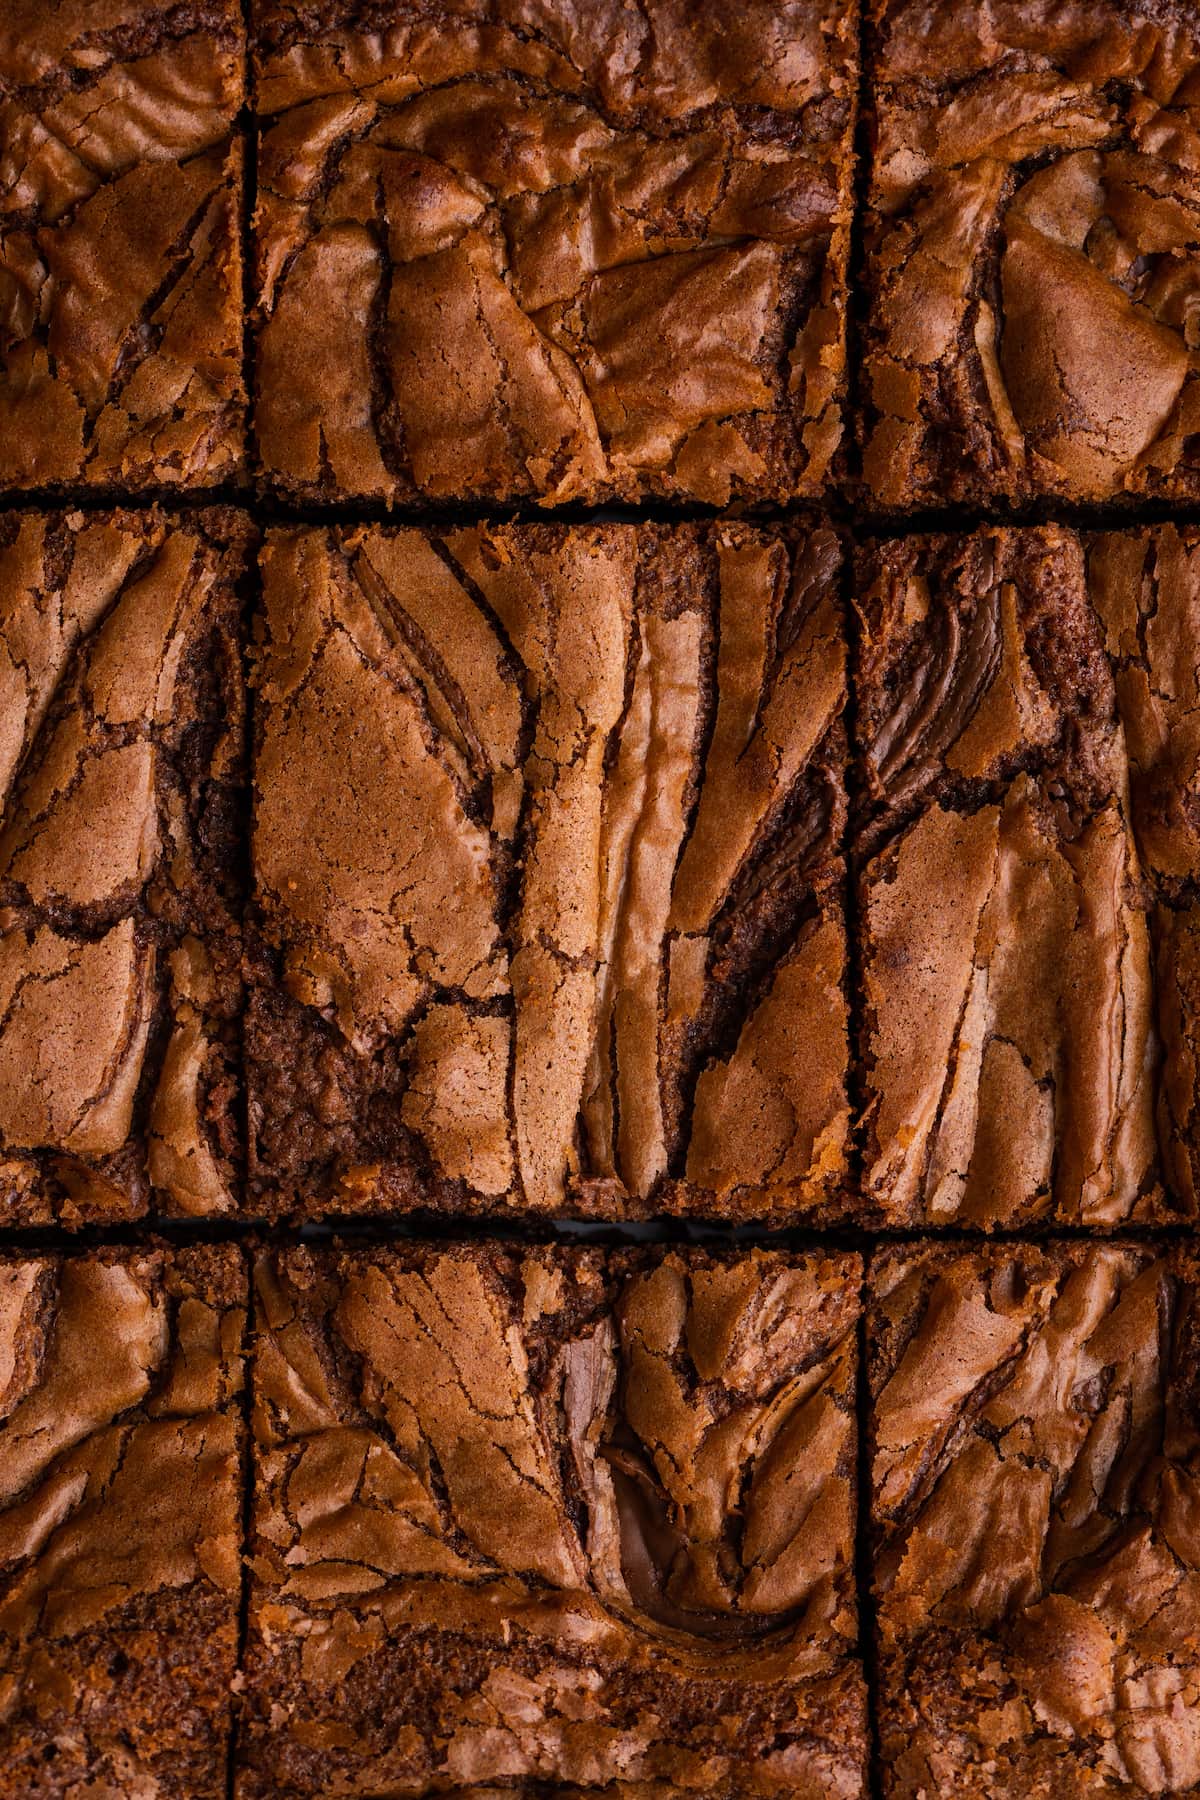 Vista aérea de brownies de Nutella cortados en cuadrados.